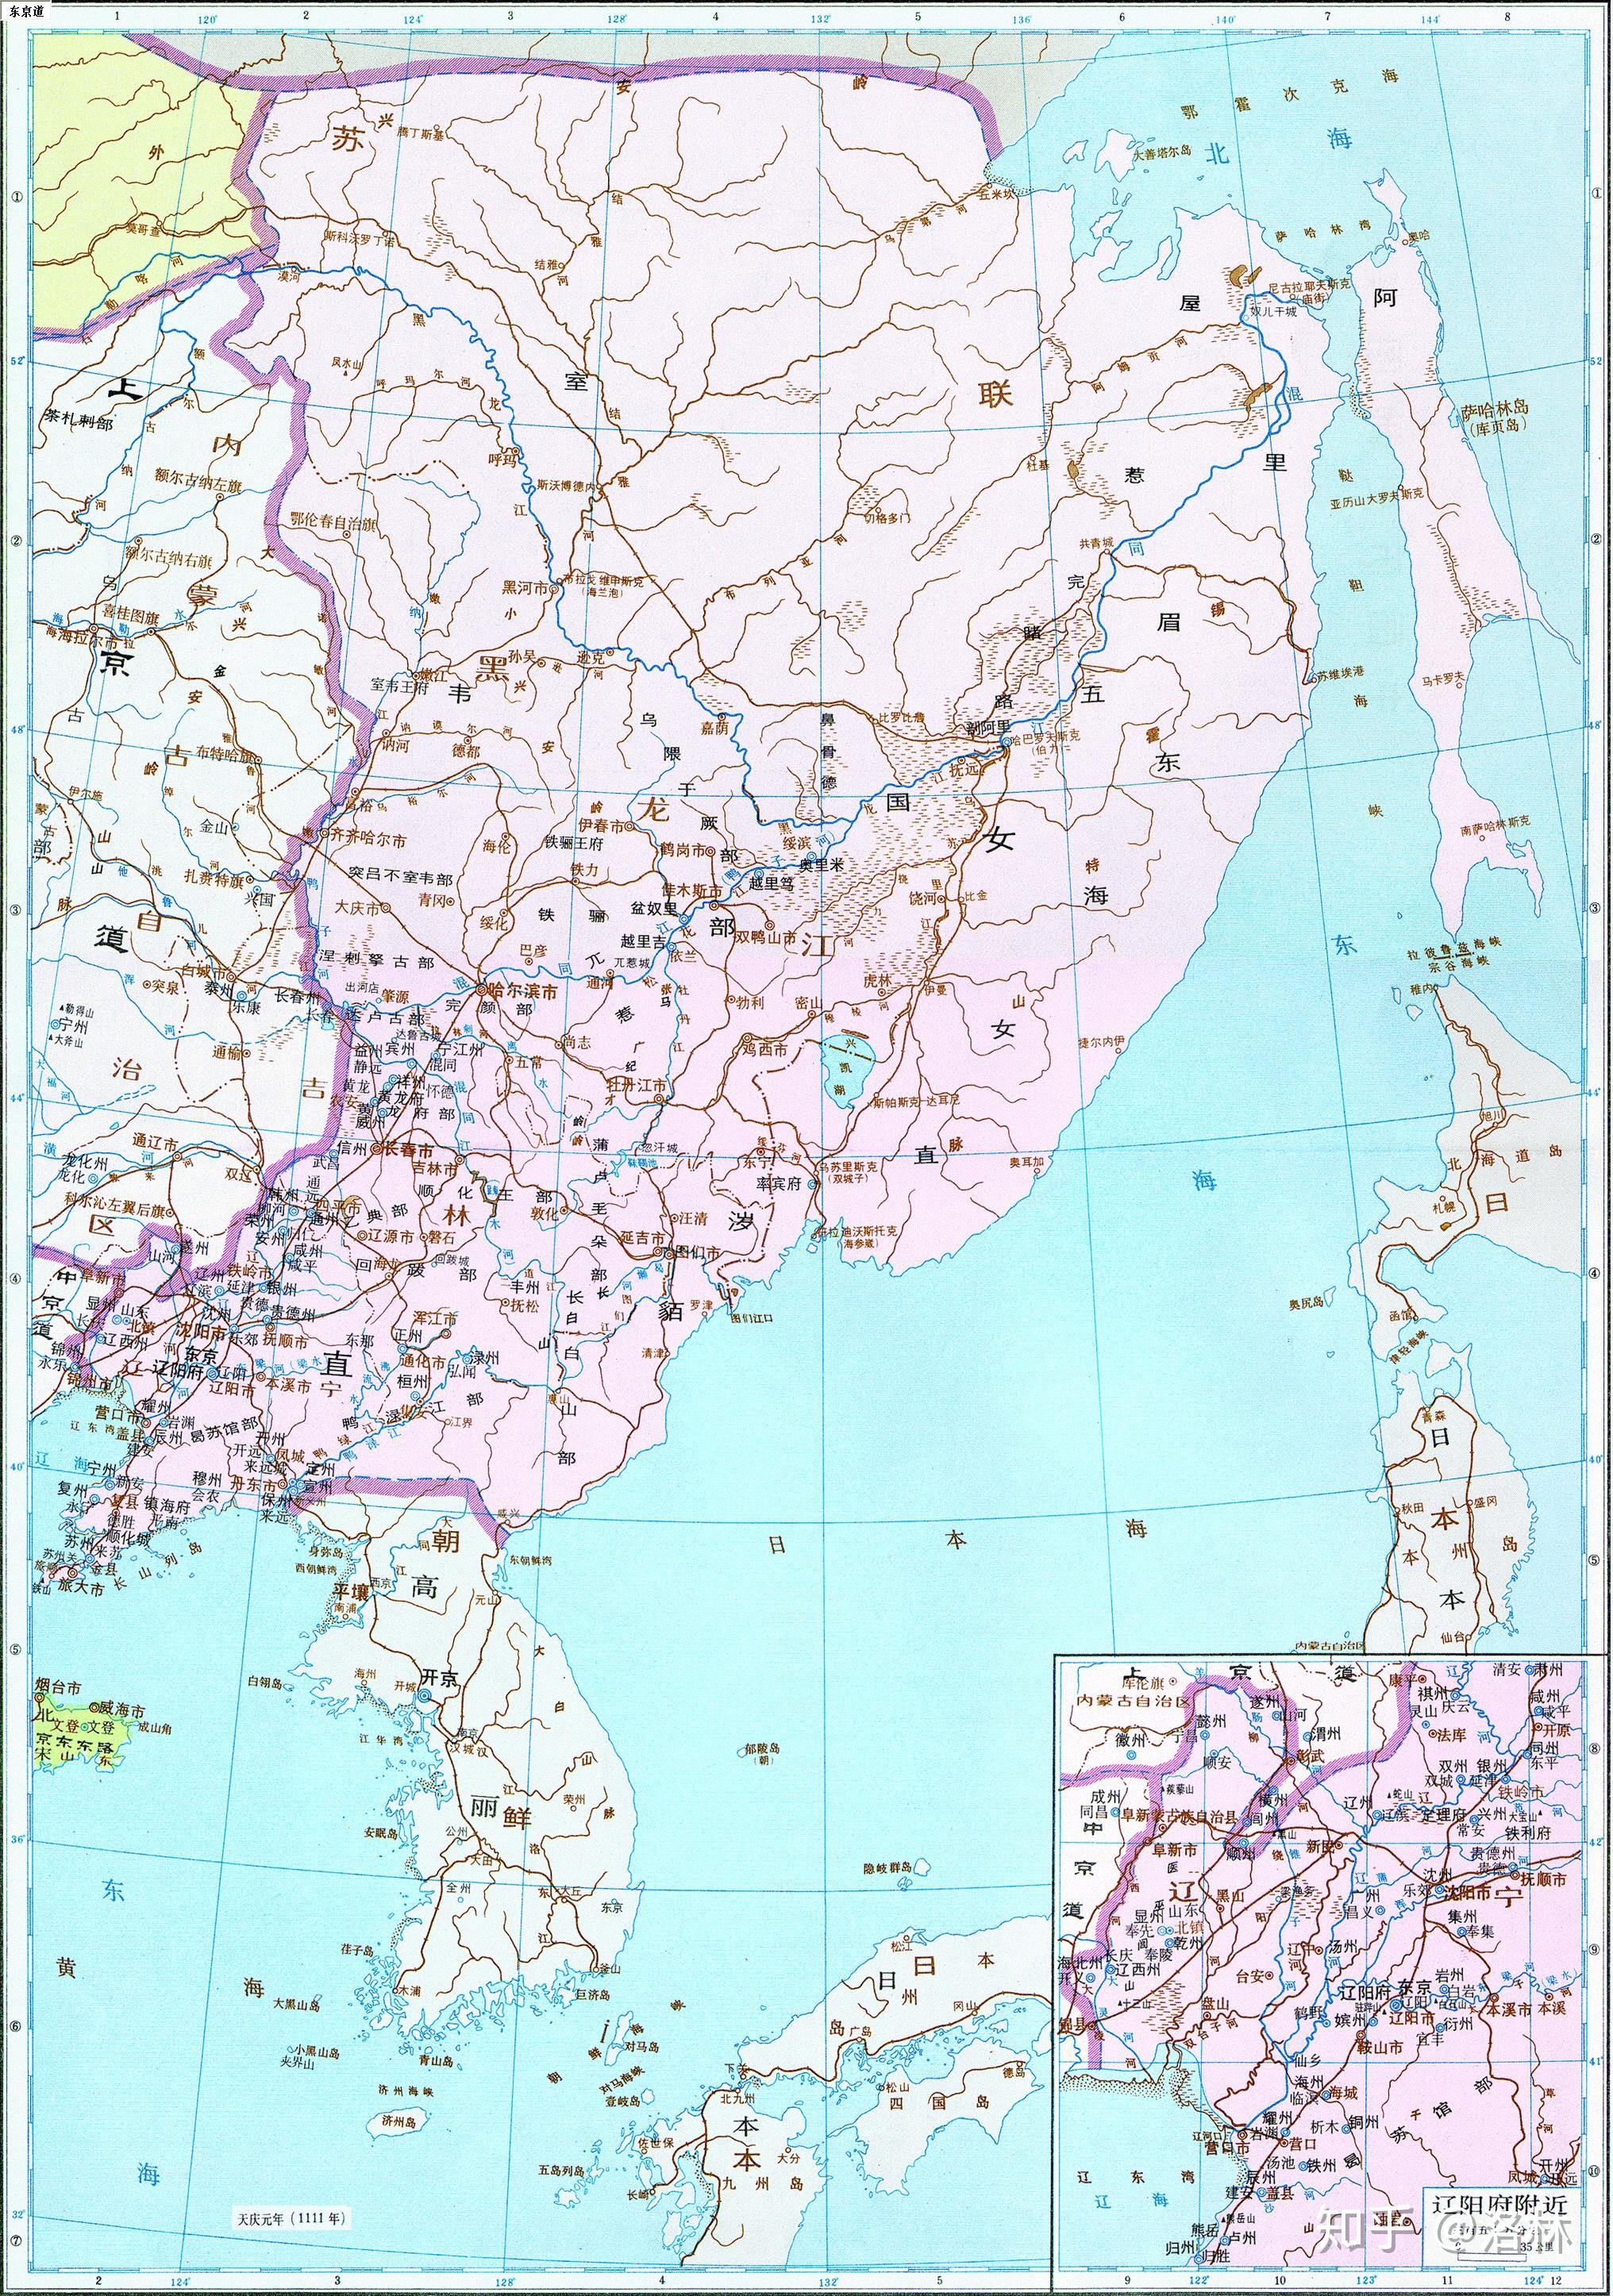 东北那一大块算是明朝真正统治的领土,还是羁縻之地? 